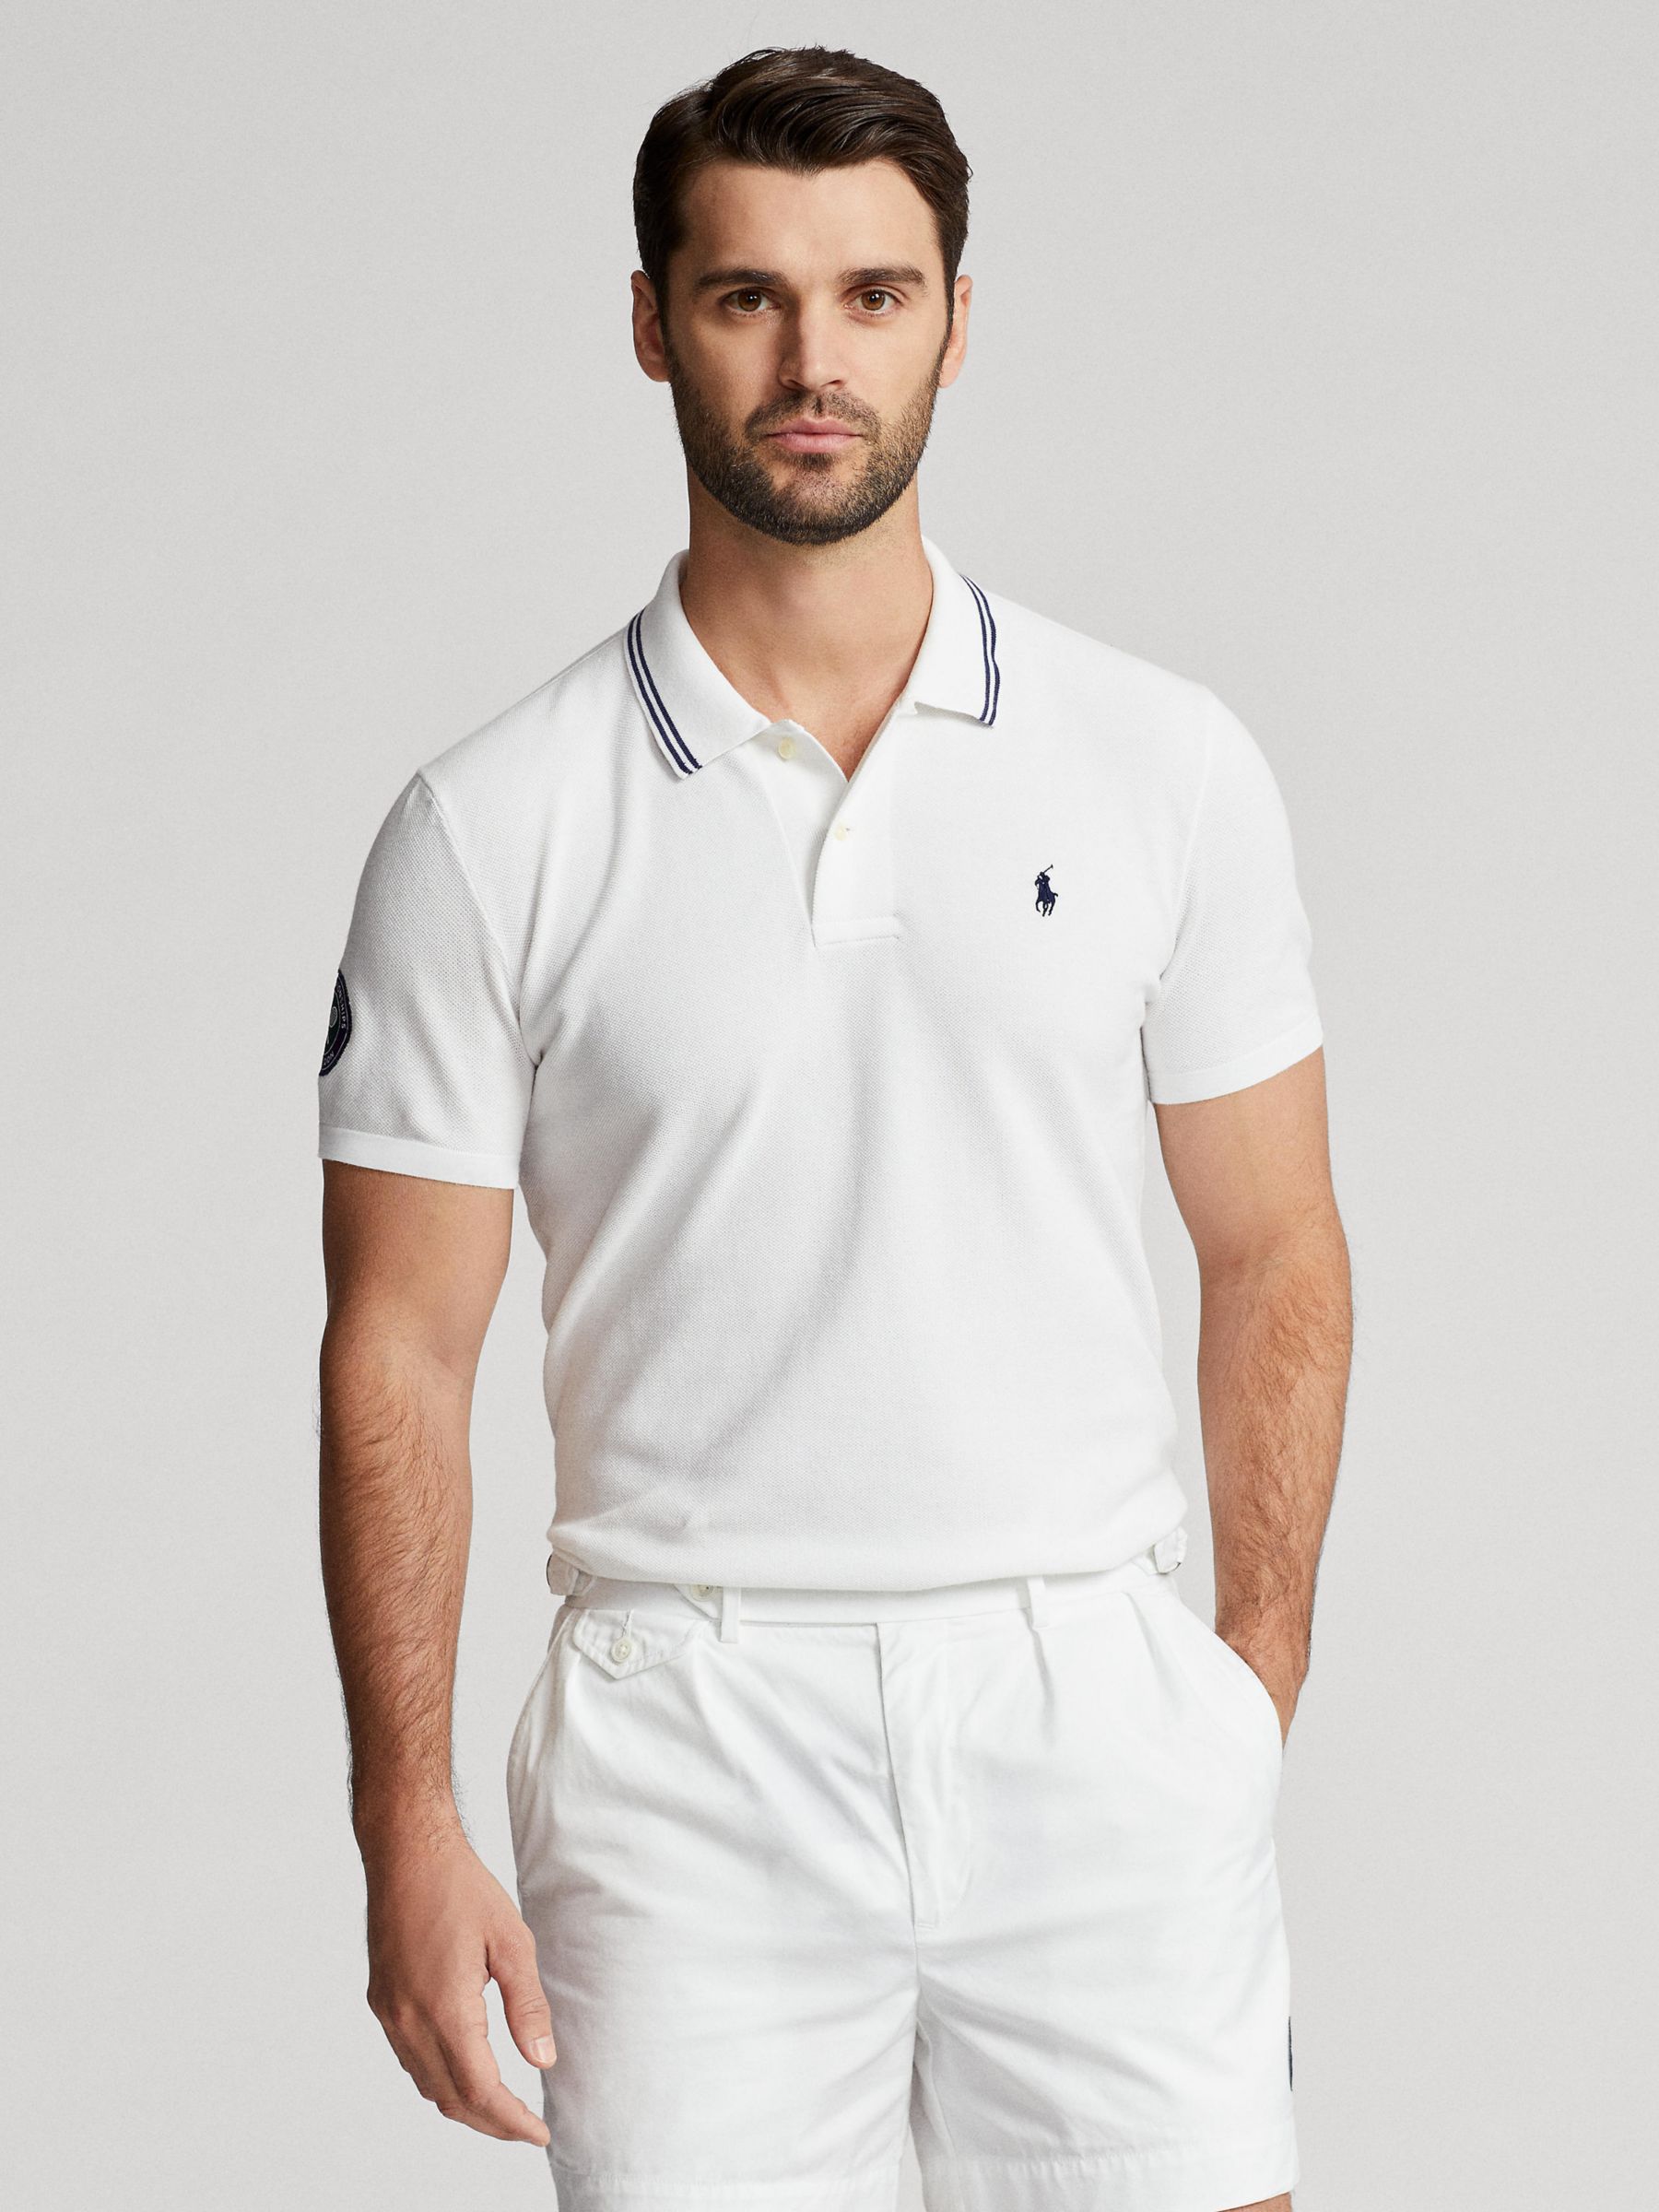 The Wimbledon Online Shop ︳ Wimbledon x Polo Ralph Lauren Women's Striped  Tee - Navy